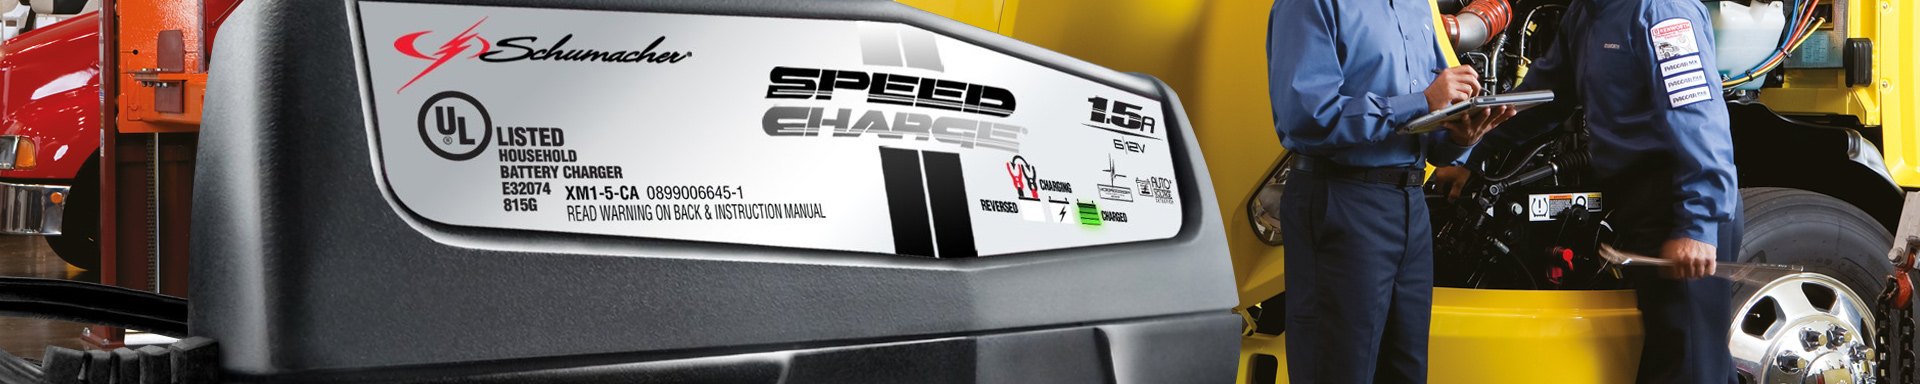 Schumacher Battery Chargers & Jump Starters